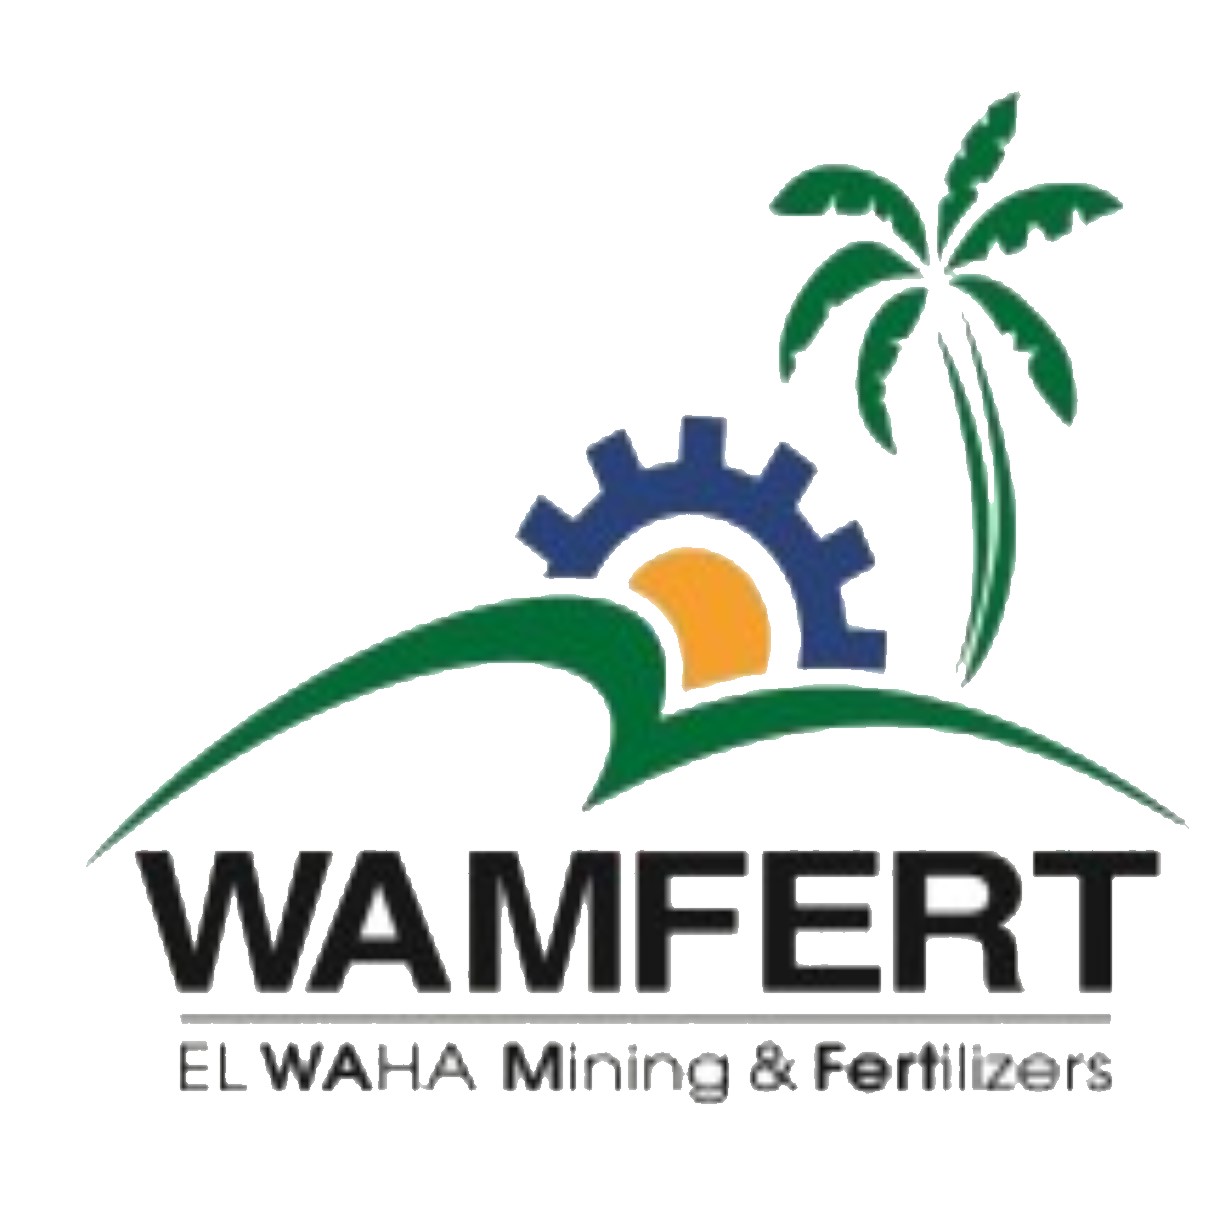 WAMFERT Group announcing